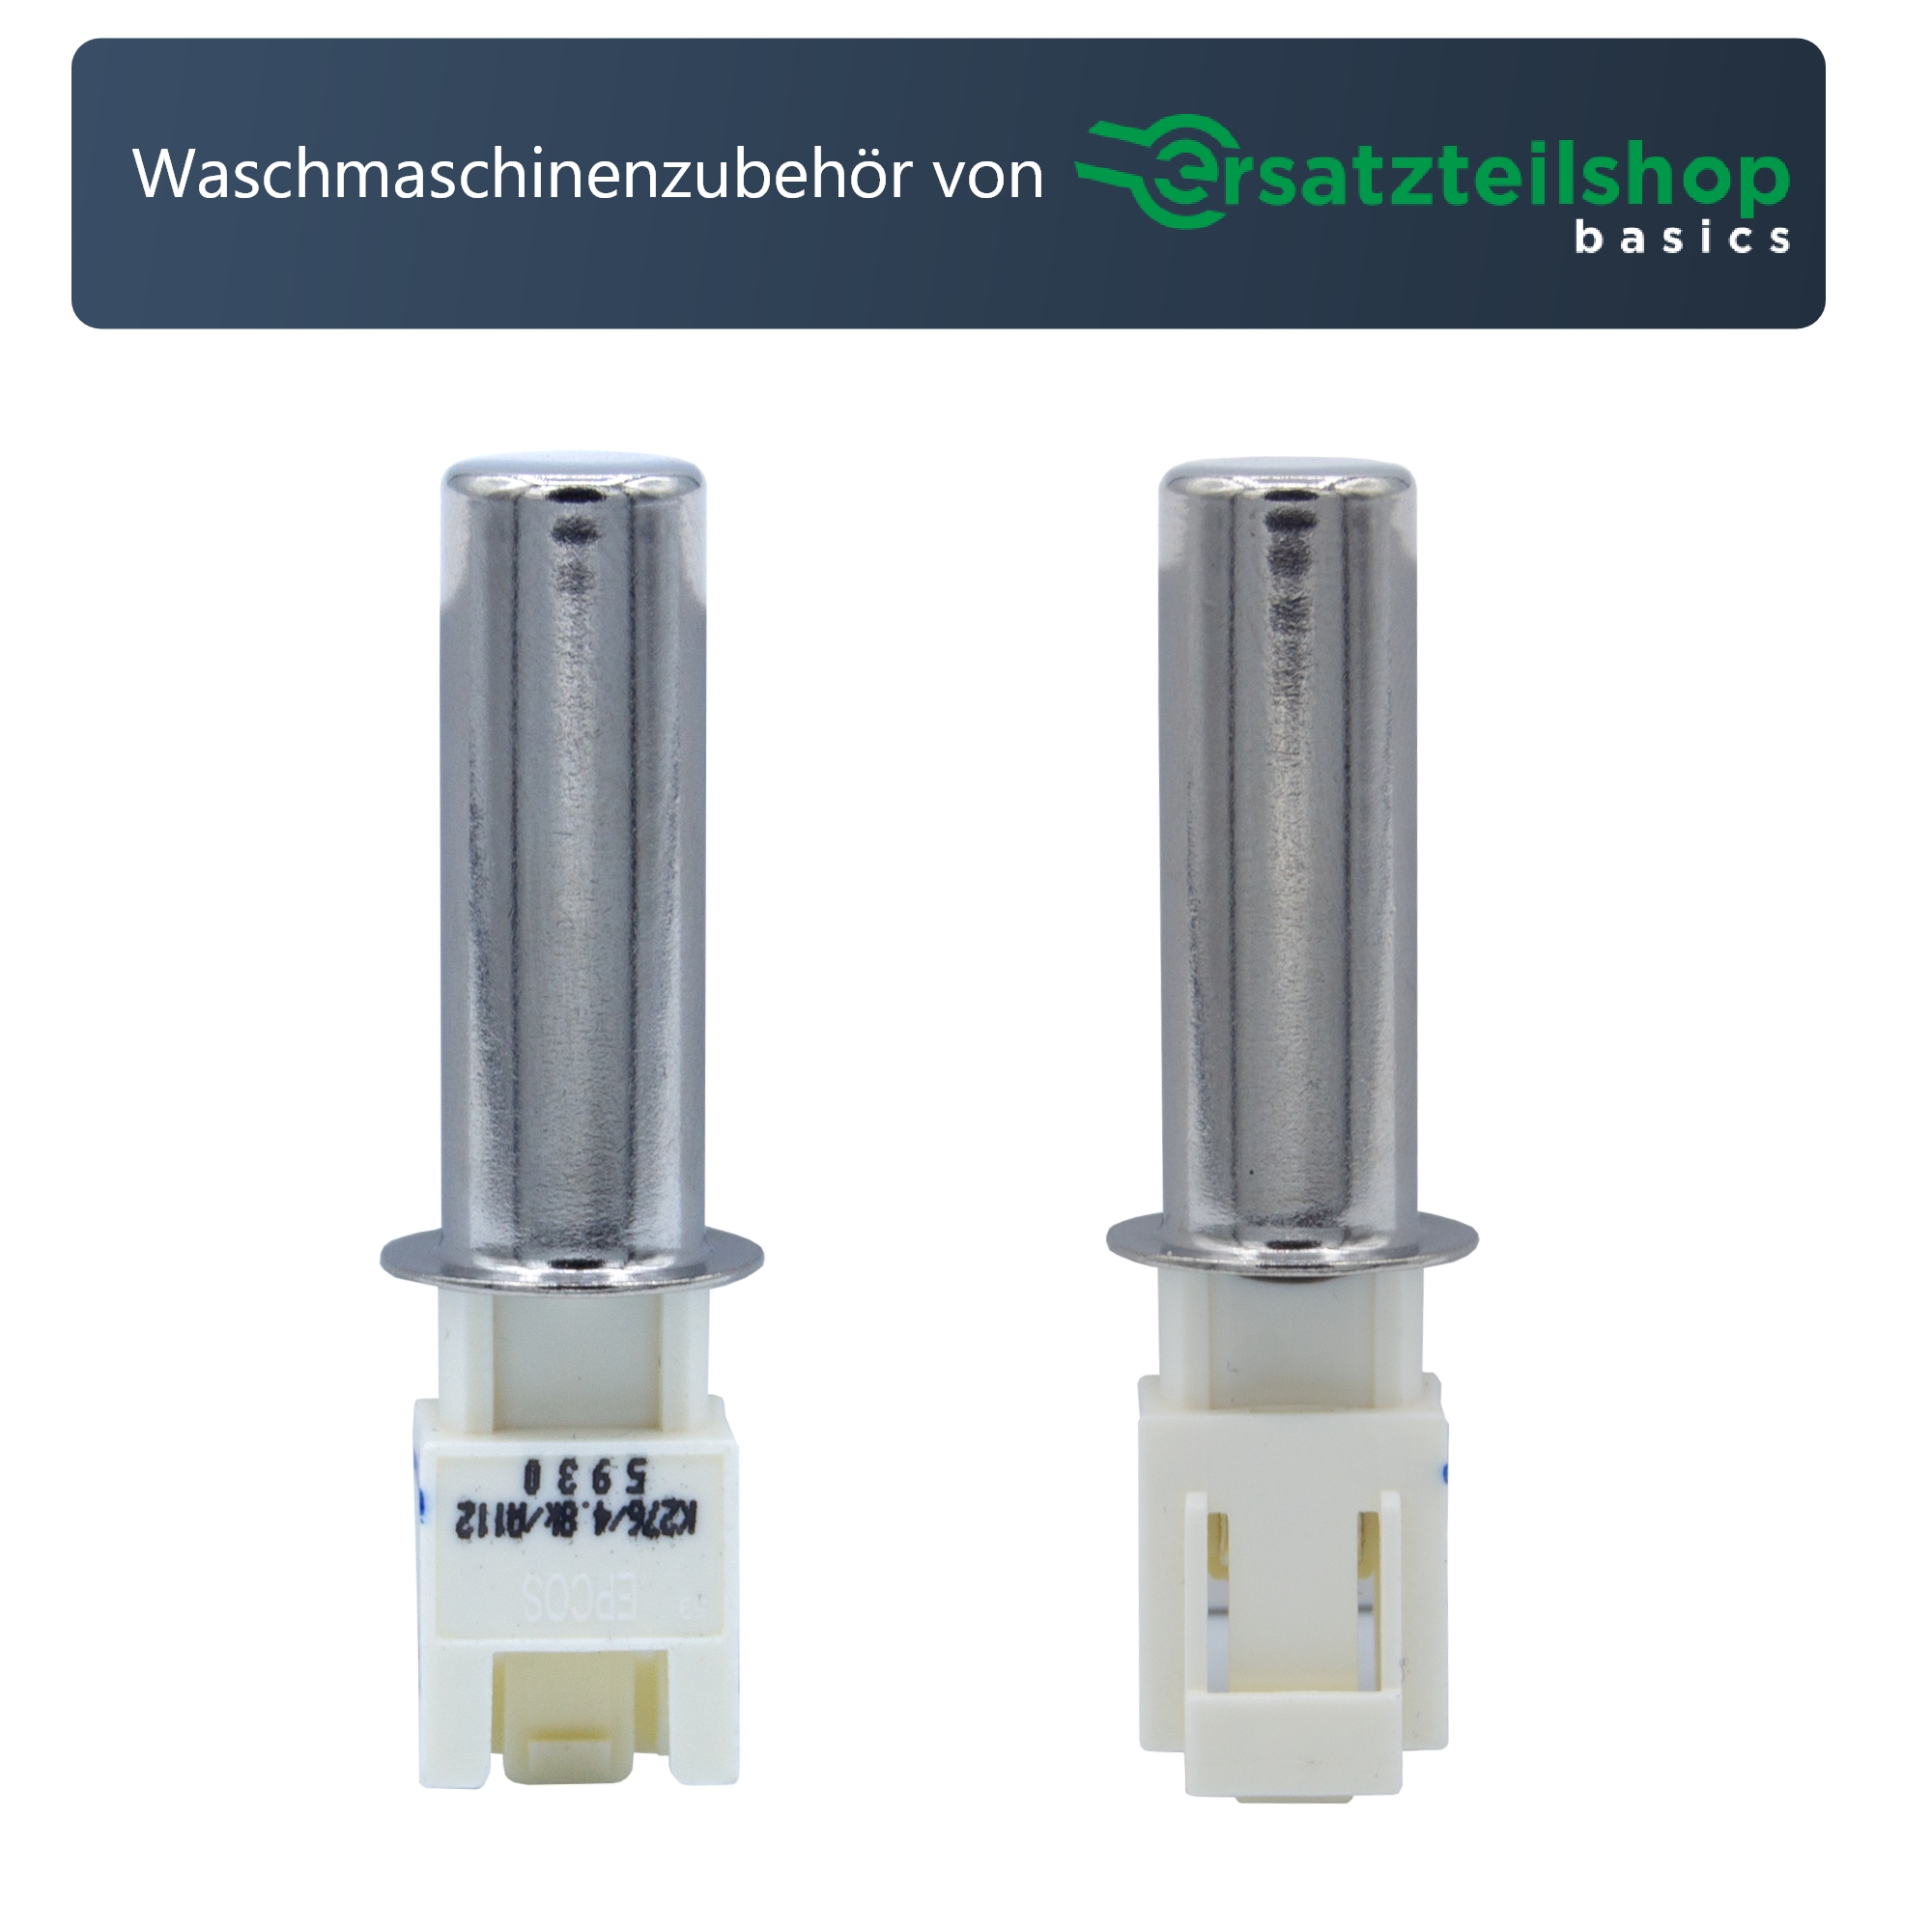 NTC/Sensor/Temperaturfühler für Waschmaschinen und Wäschetrockner - passend für Bosch/Siemens/Neff/Constructa/Balay - passend wie 00170961